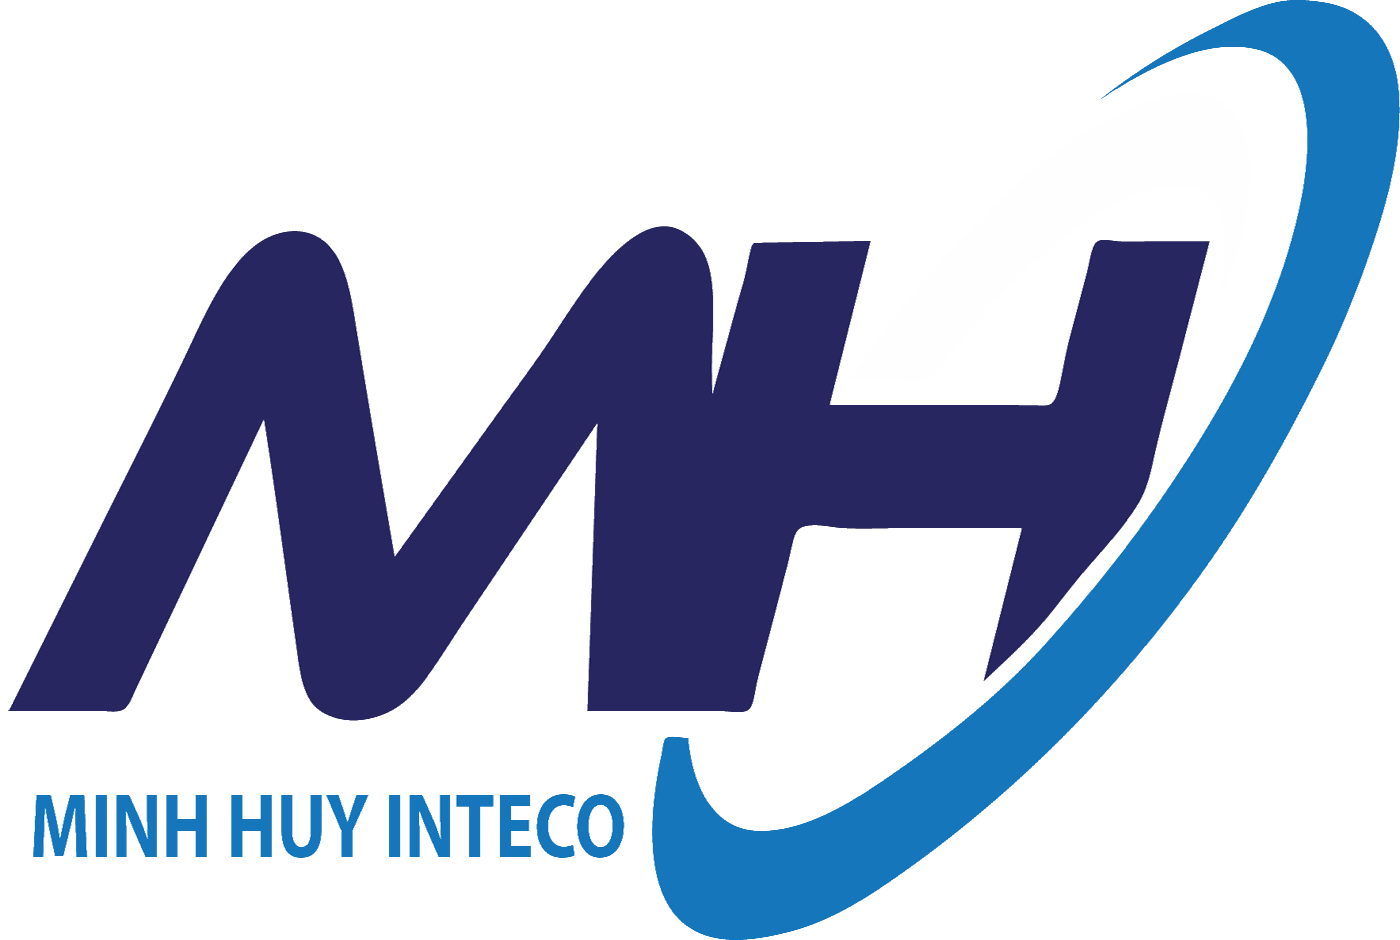 Minh Huy Company